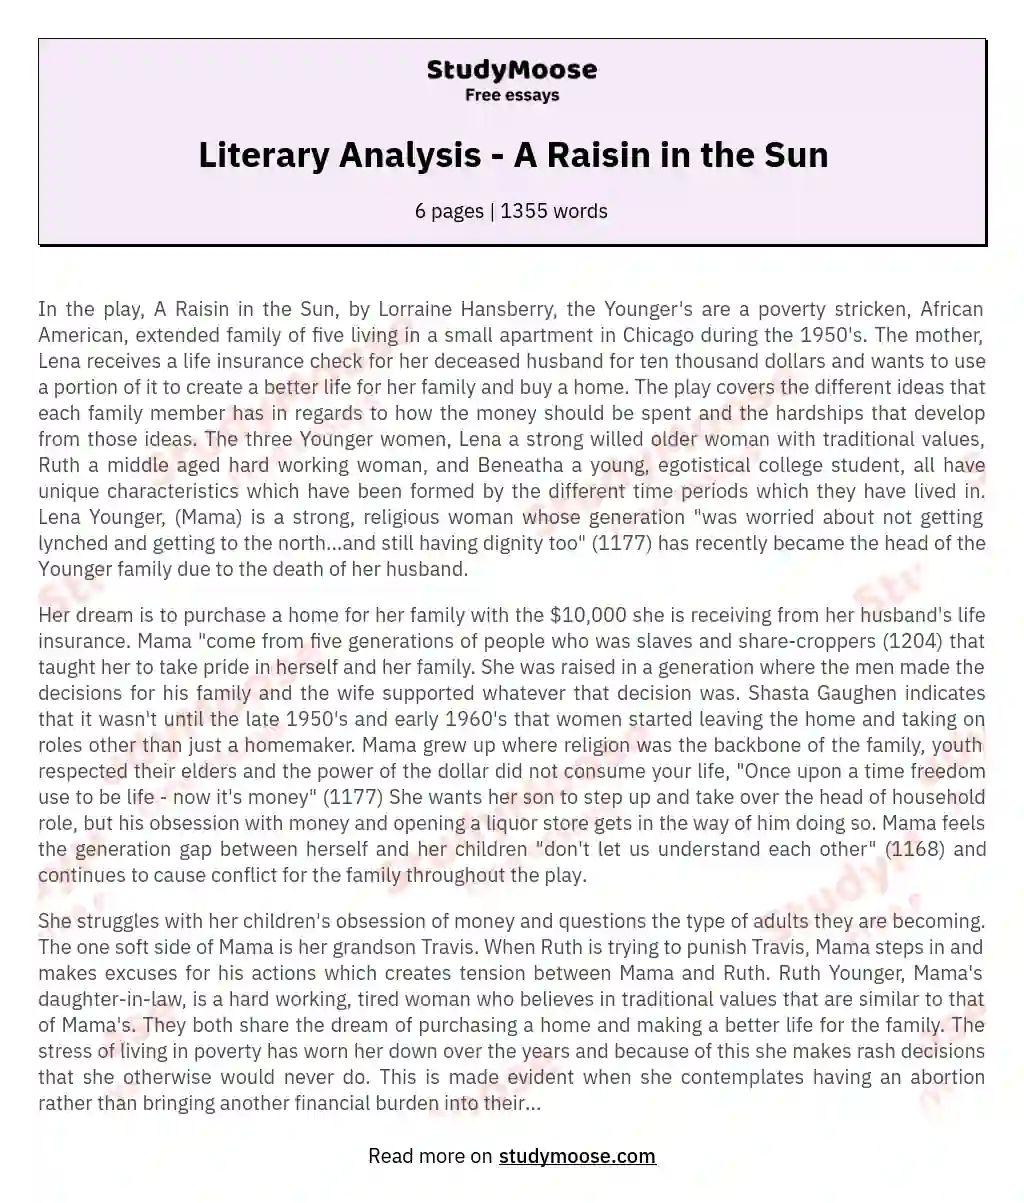 Literary Analysis - A Raisin in the Sun essay